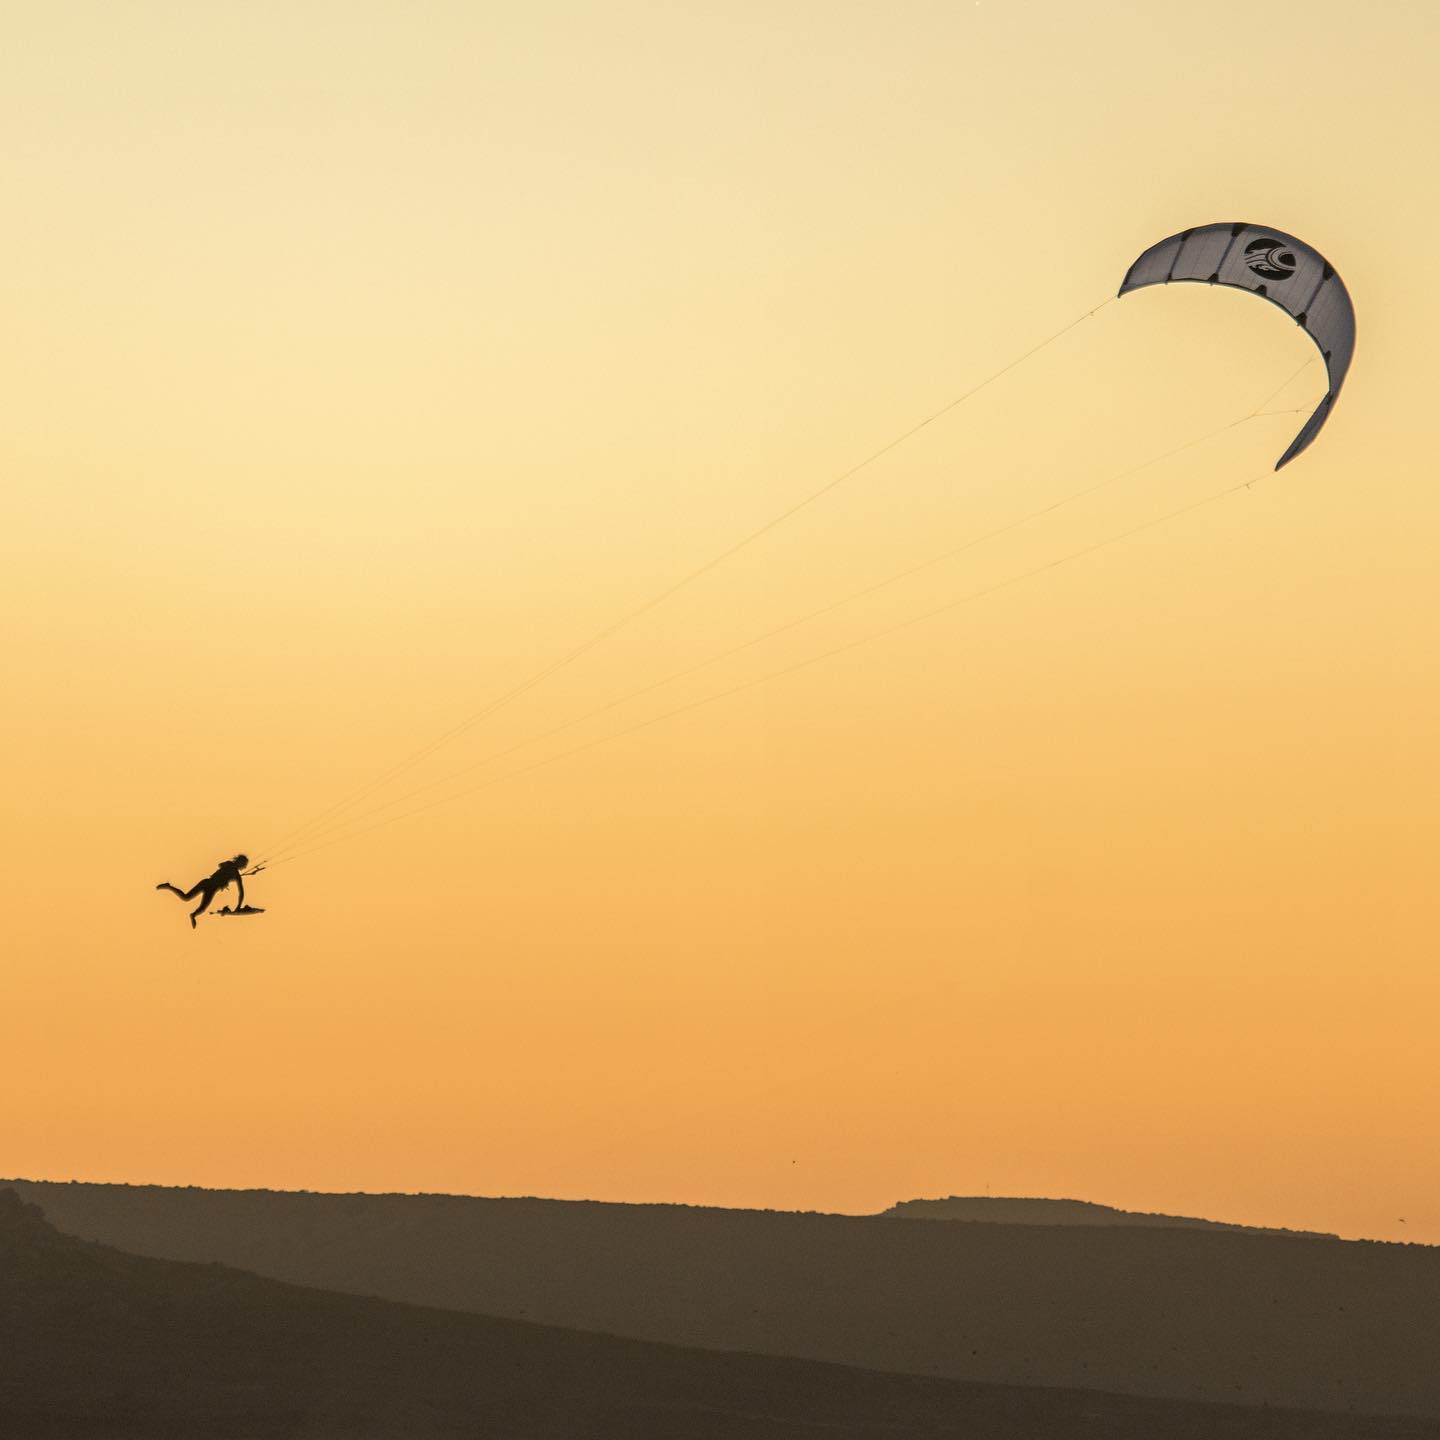 Big Air kite Cabrinha NITRO